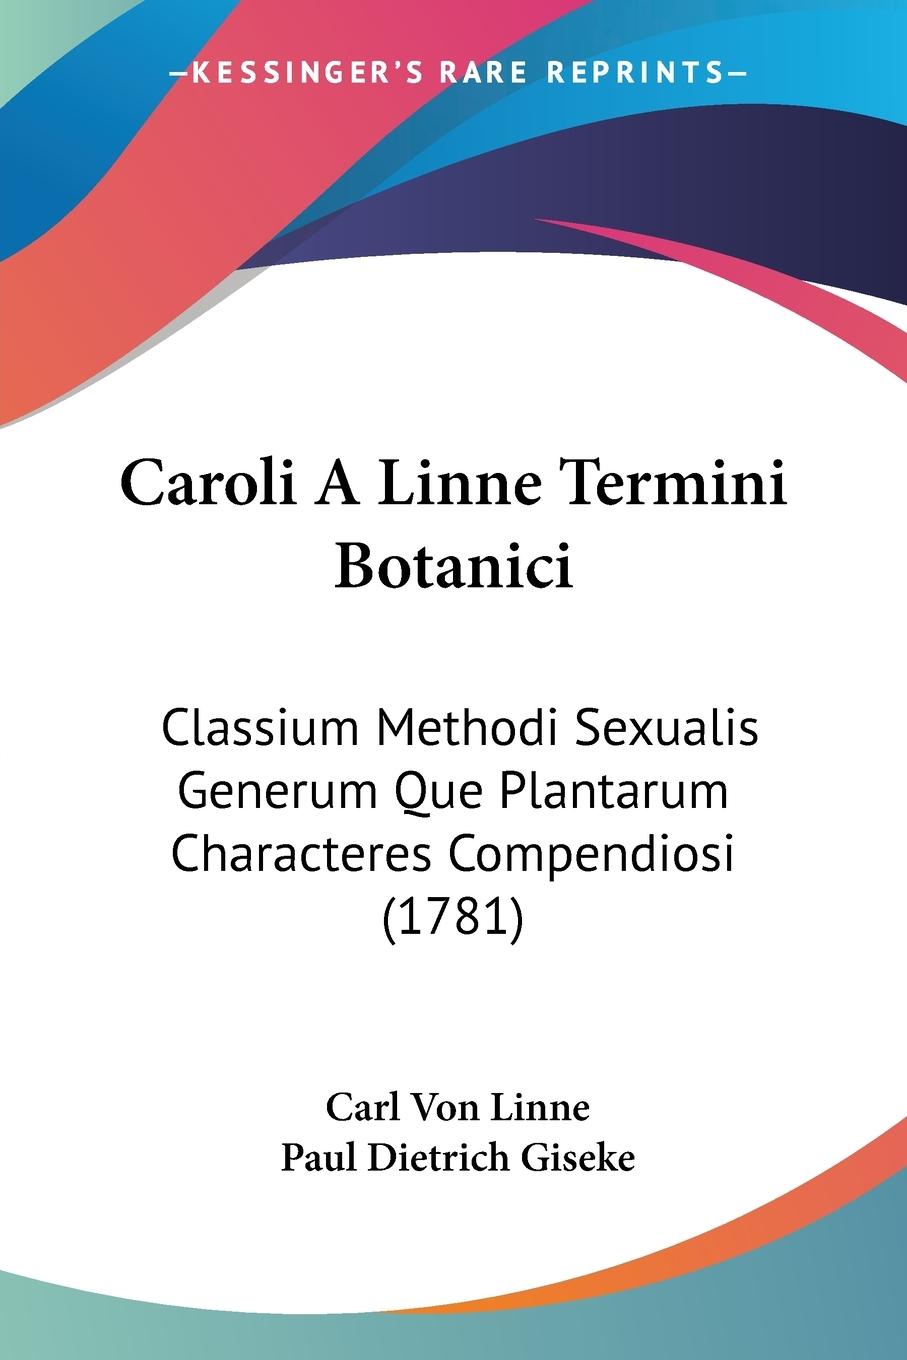 Caroli A Linne Termini Botanici - Linne, Carl Von Giseke, Paul Dietrich